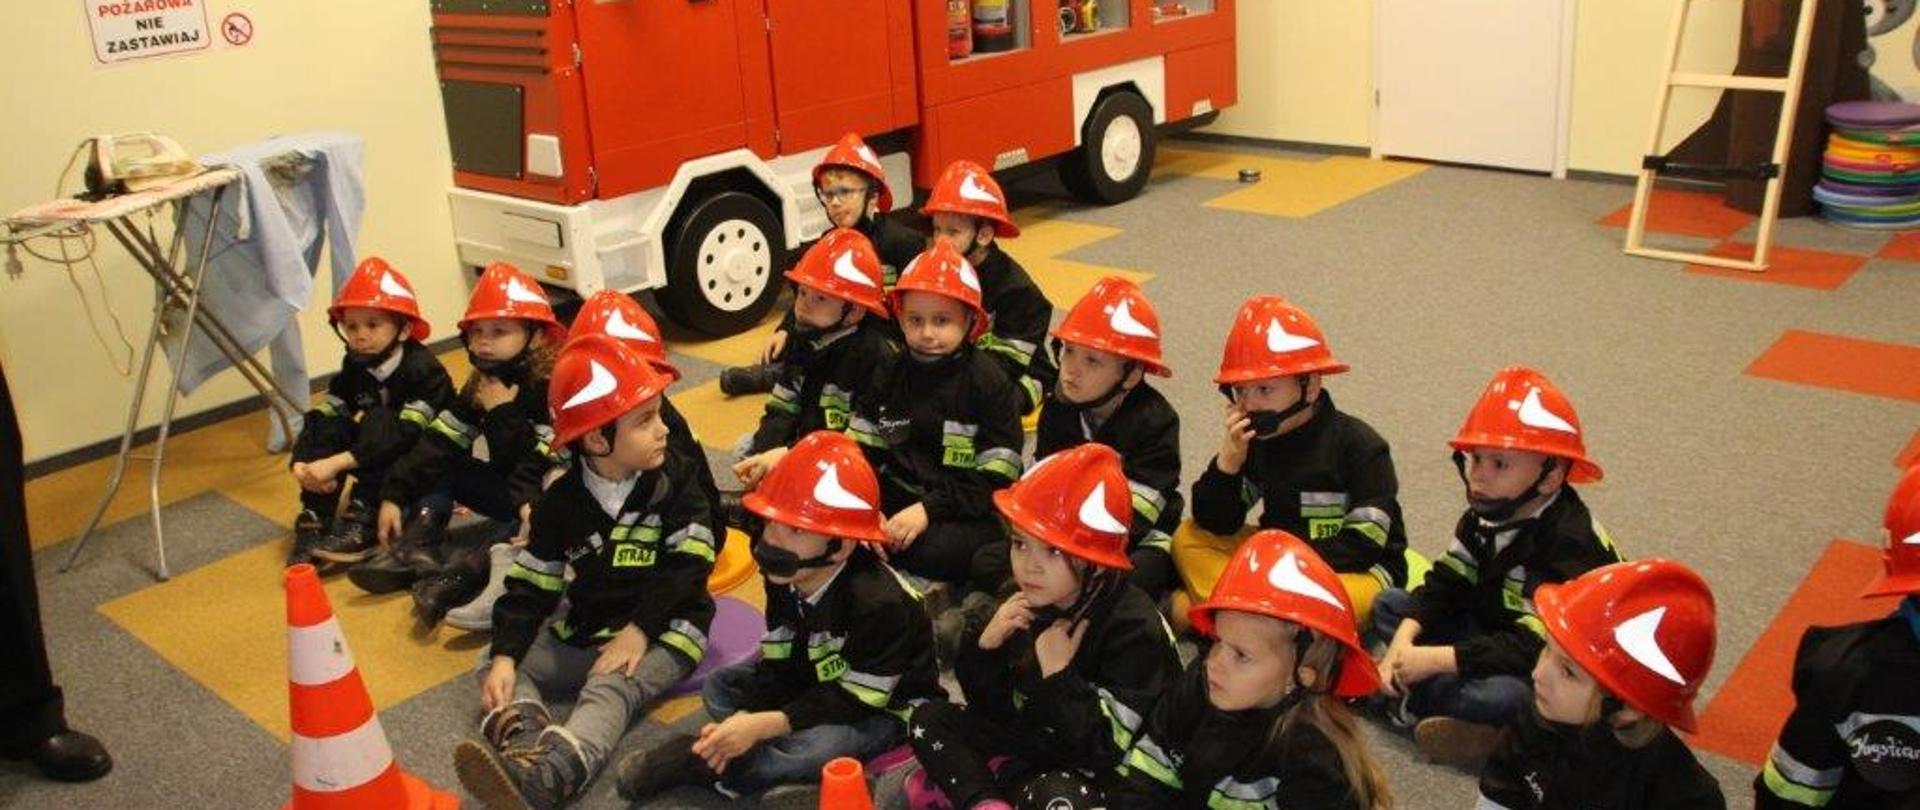 Na zdjęciu gromada dzieci w strojach strażackich podczas trwania zajęć.